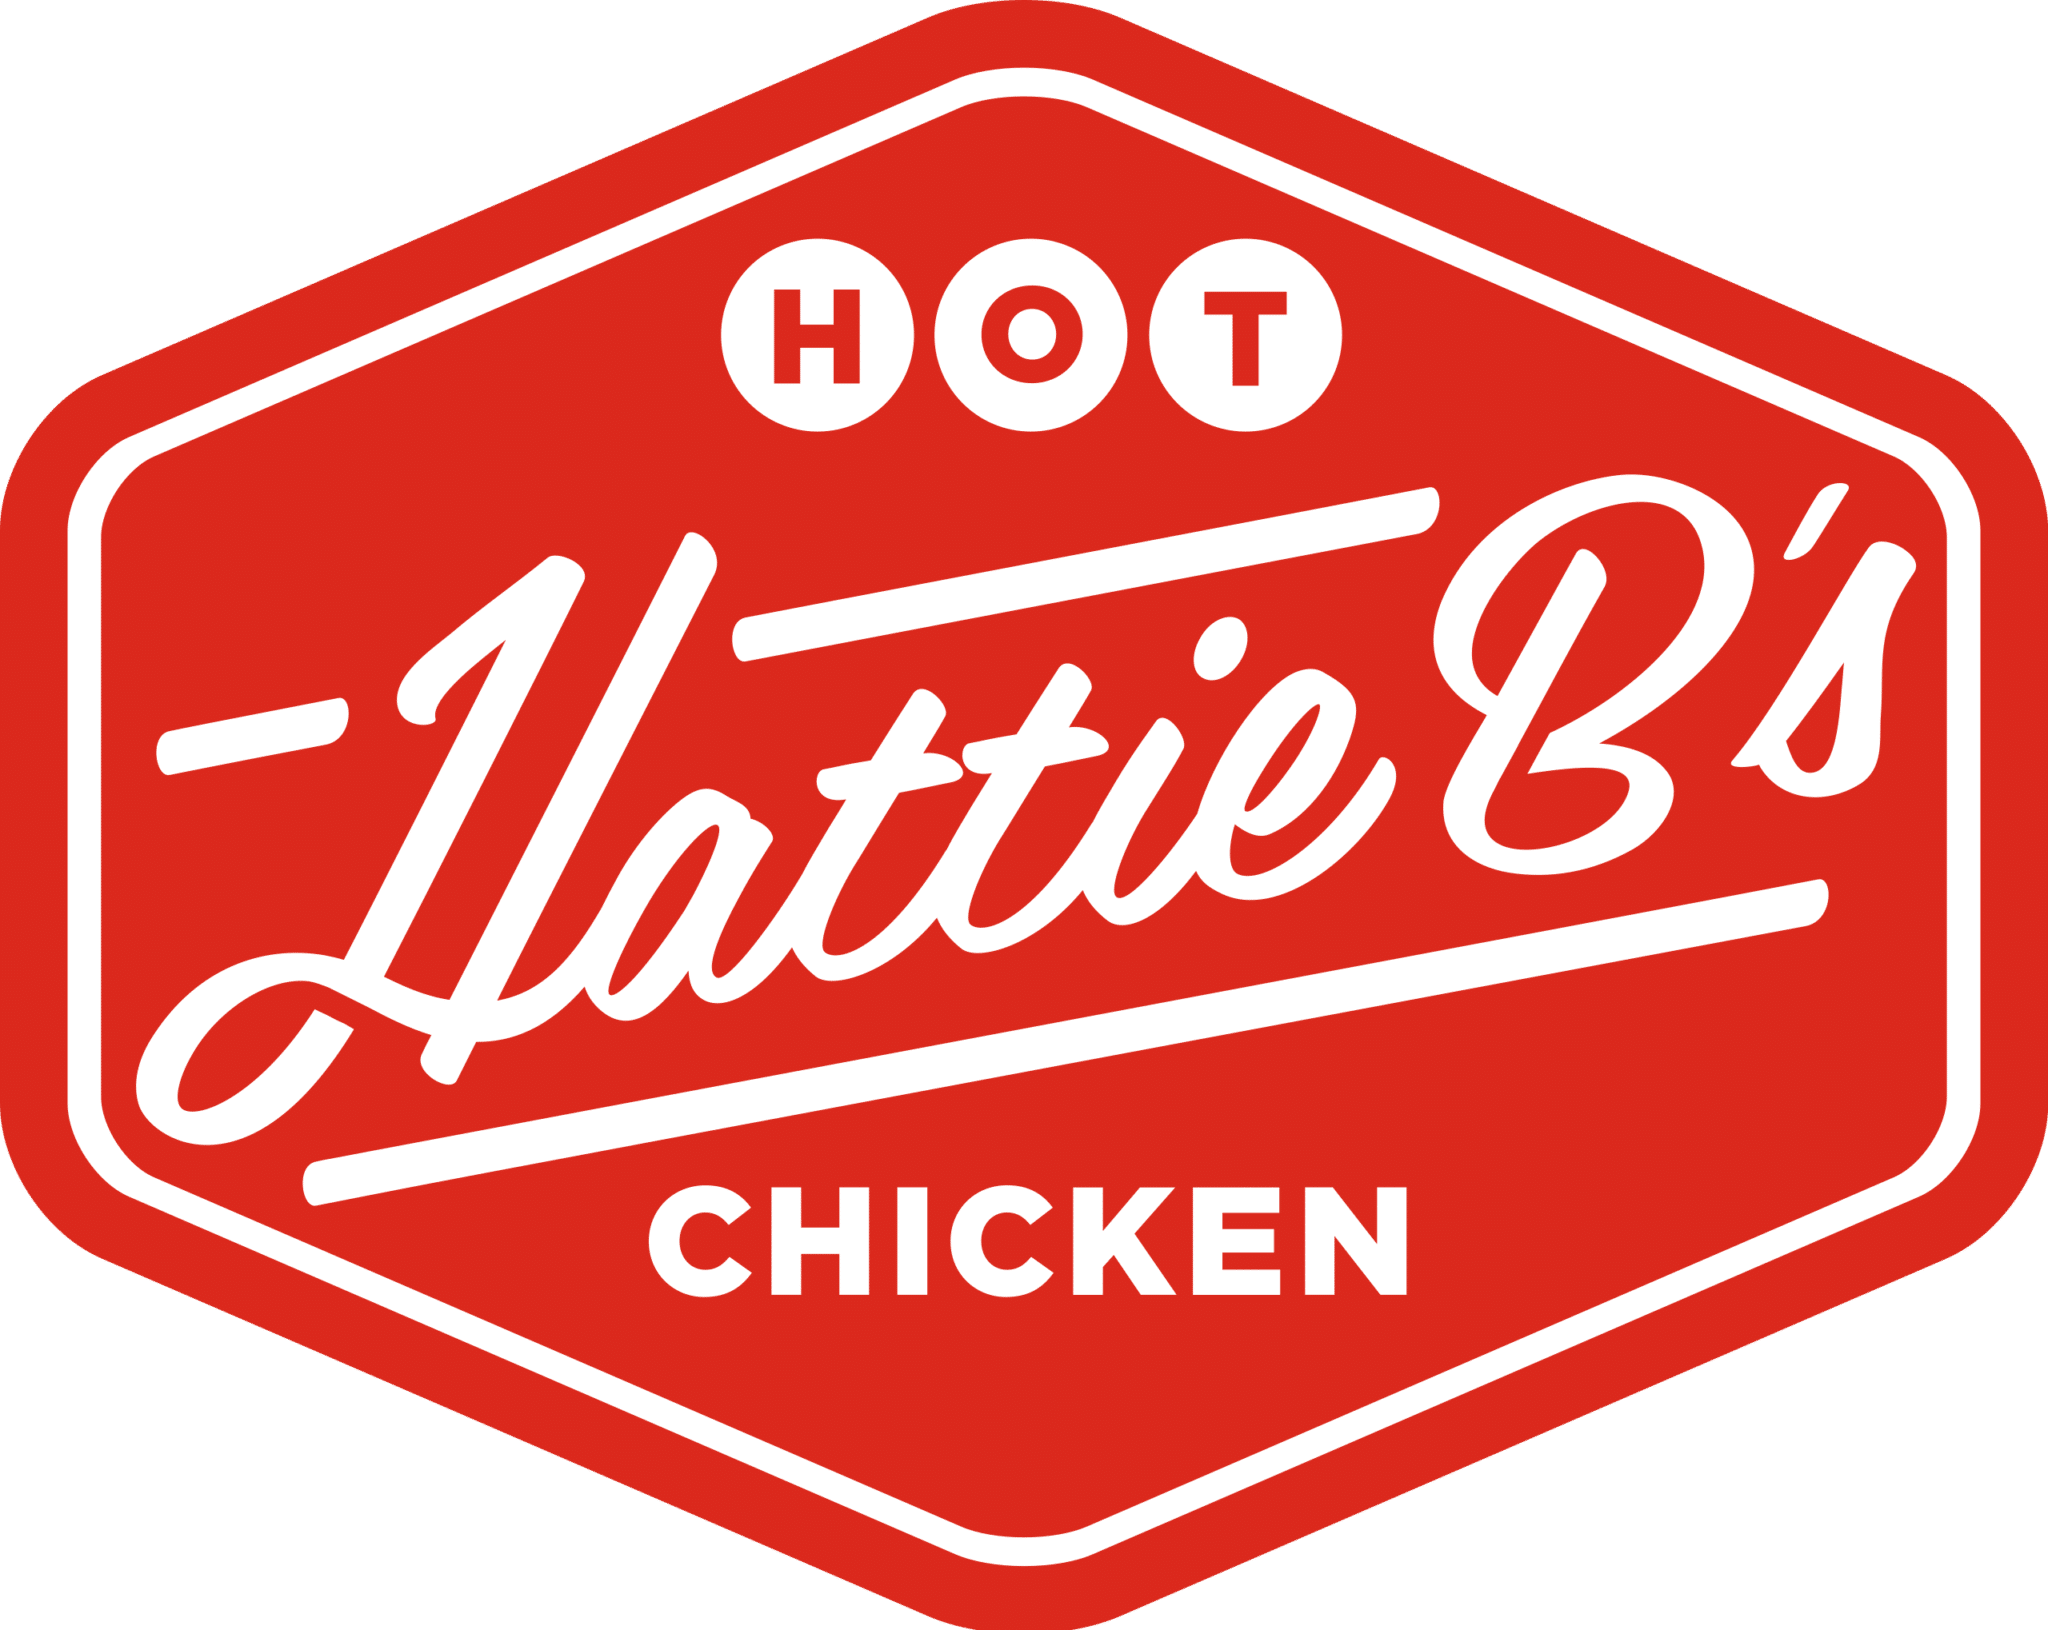 Hattie B's Hot Chicken Logo